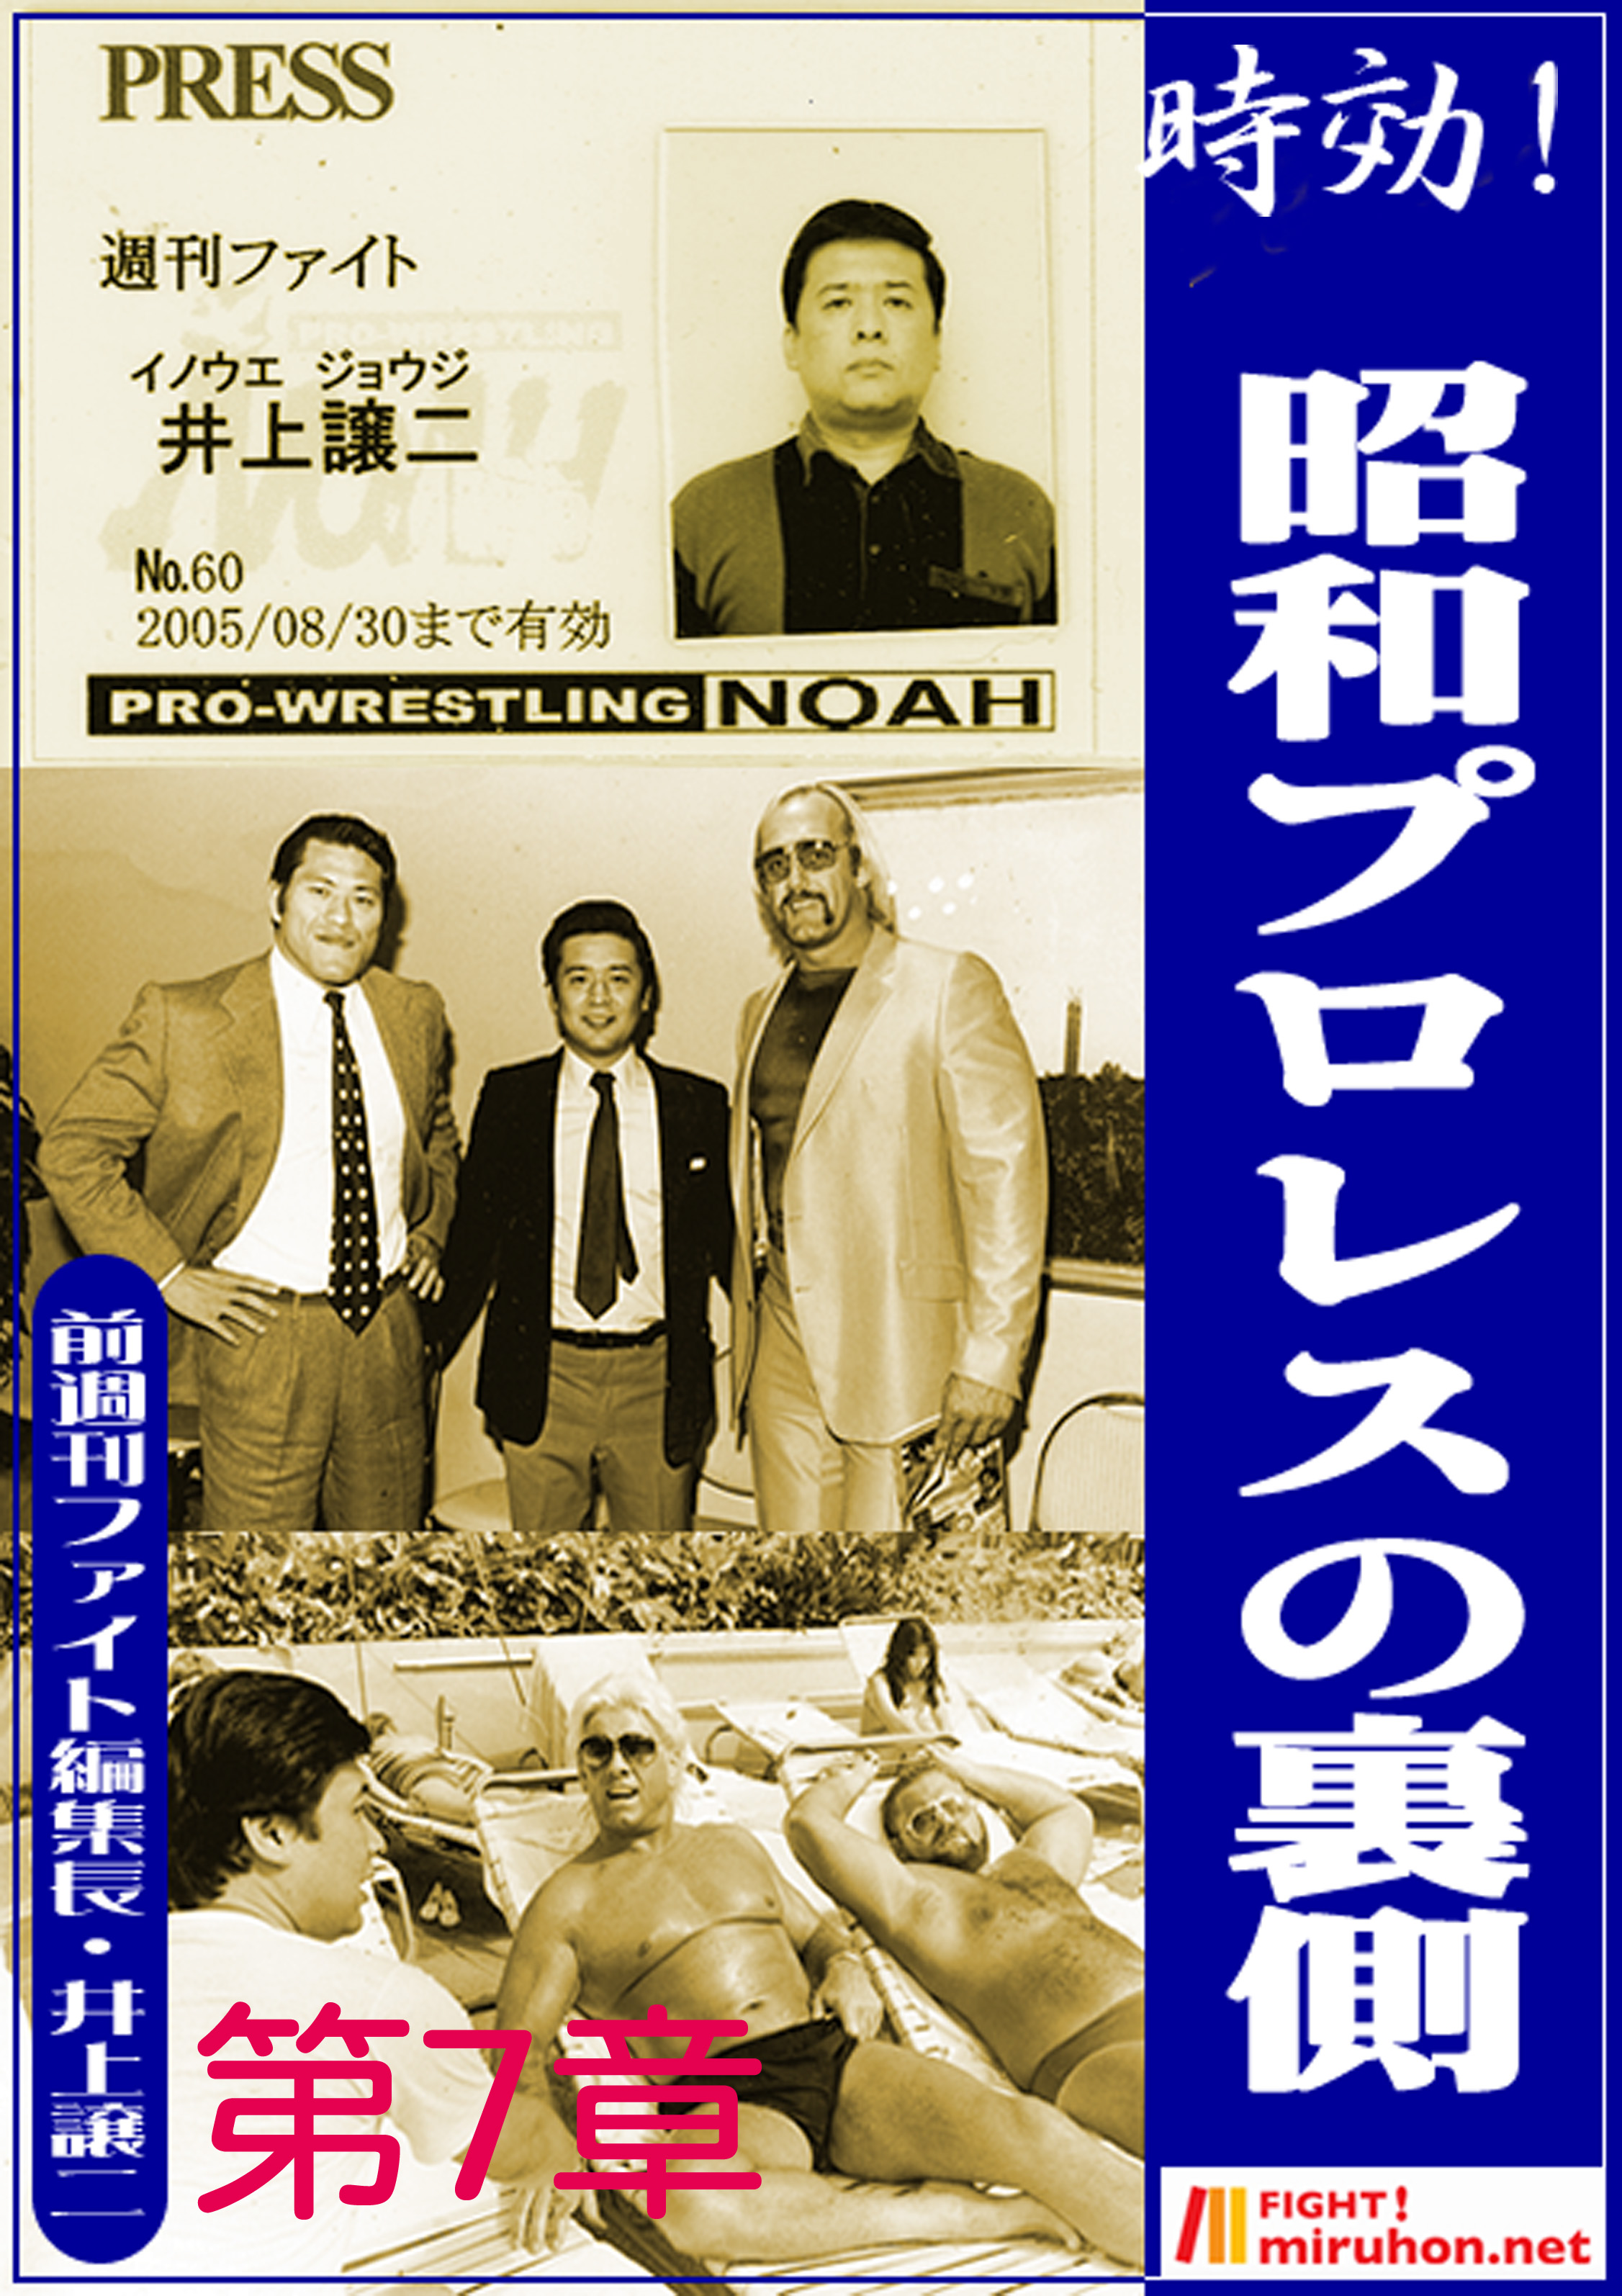 時効 昭和プロレスの裏側 知られざる有名外国人レスラーの 犯罪 週刊ファイト